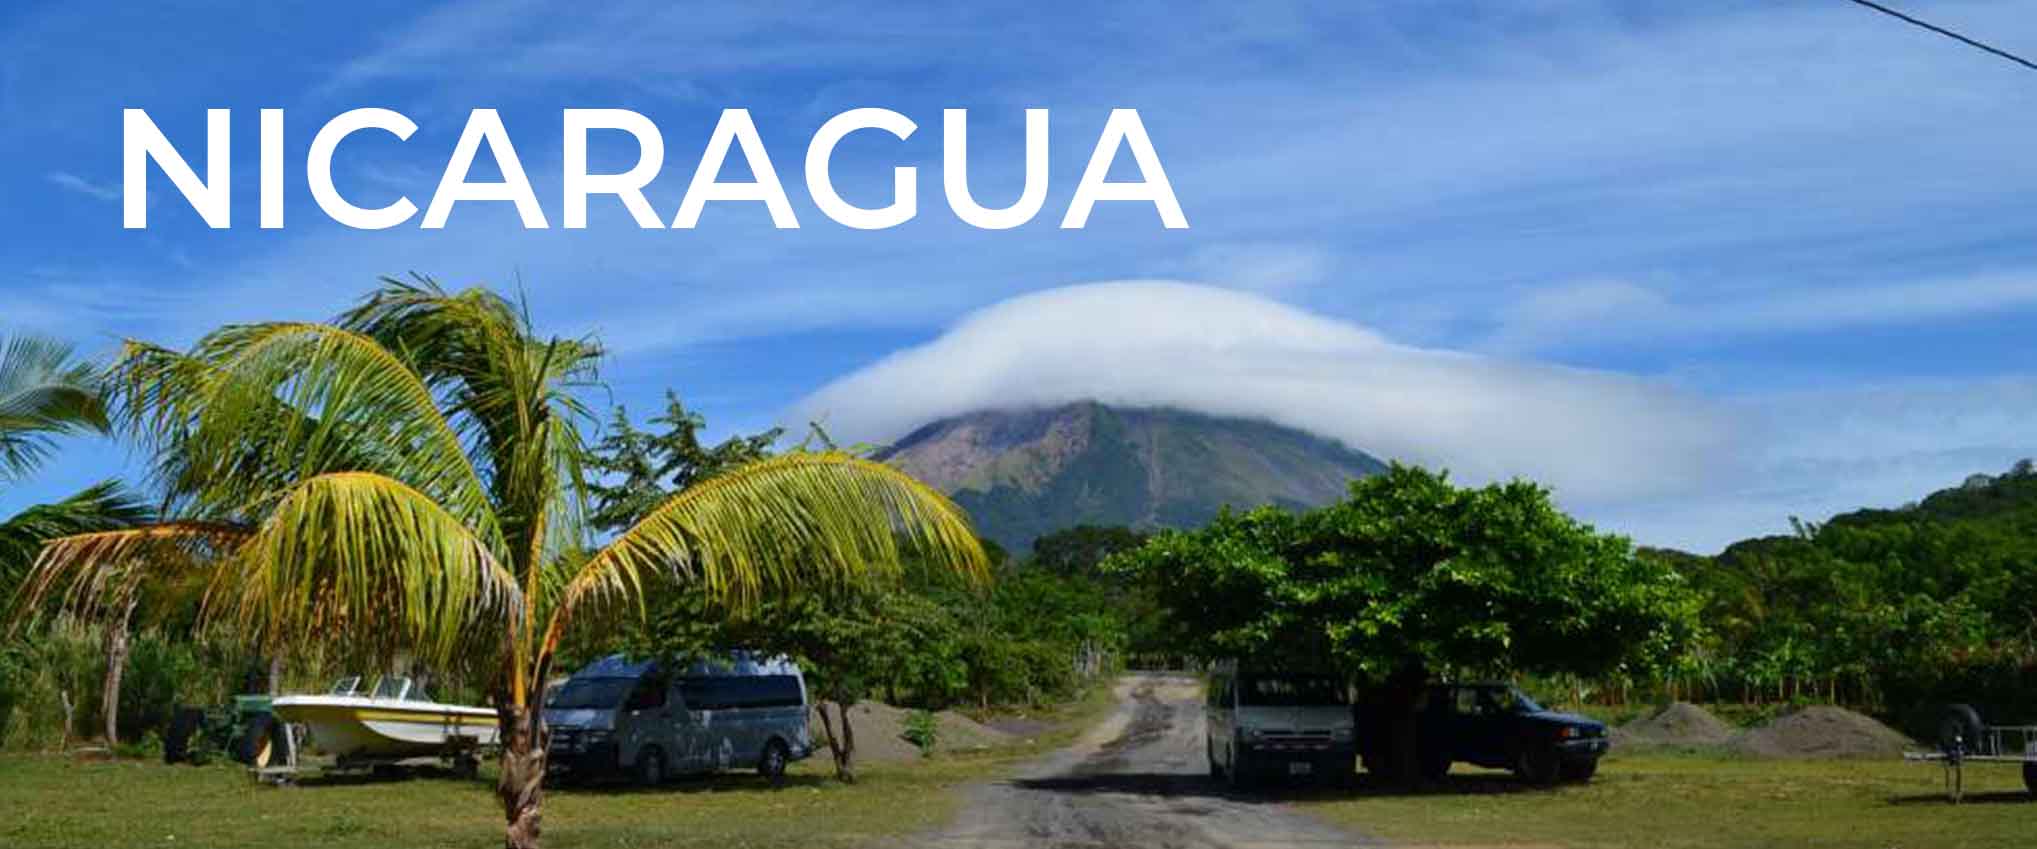 Nicaragua-page-banner